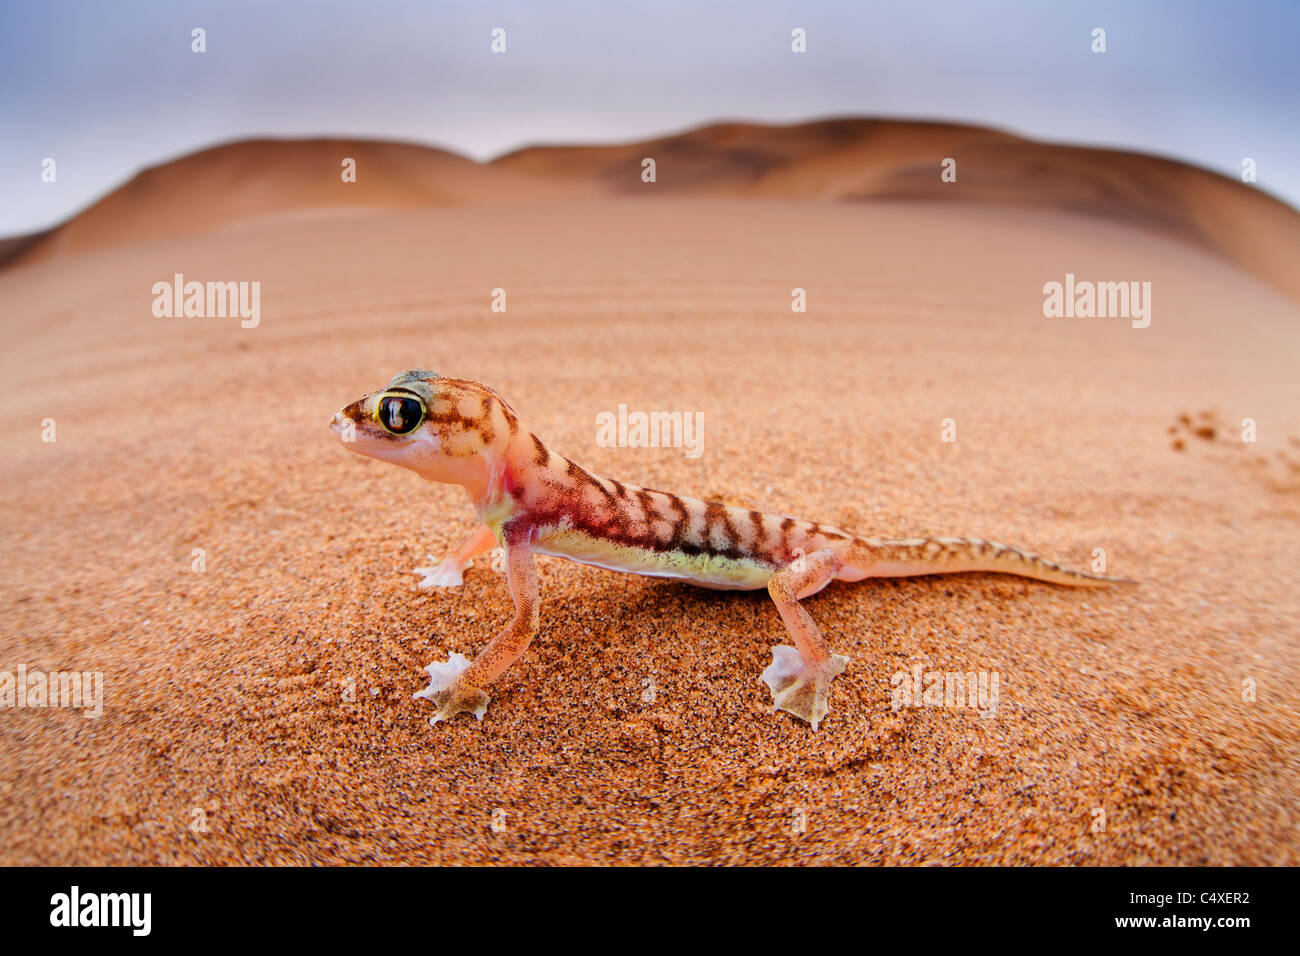 Web-footed Gecko (Palmatogecko rangei). Los animales nocturnos que viven en su mayoría anidado en profundas madrigueras. Foto de stock